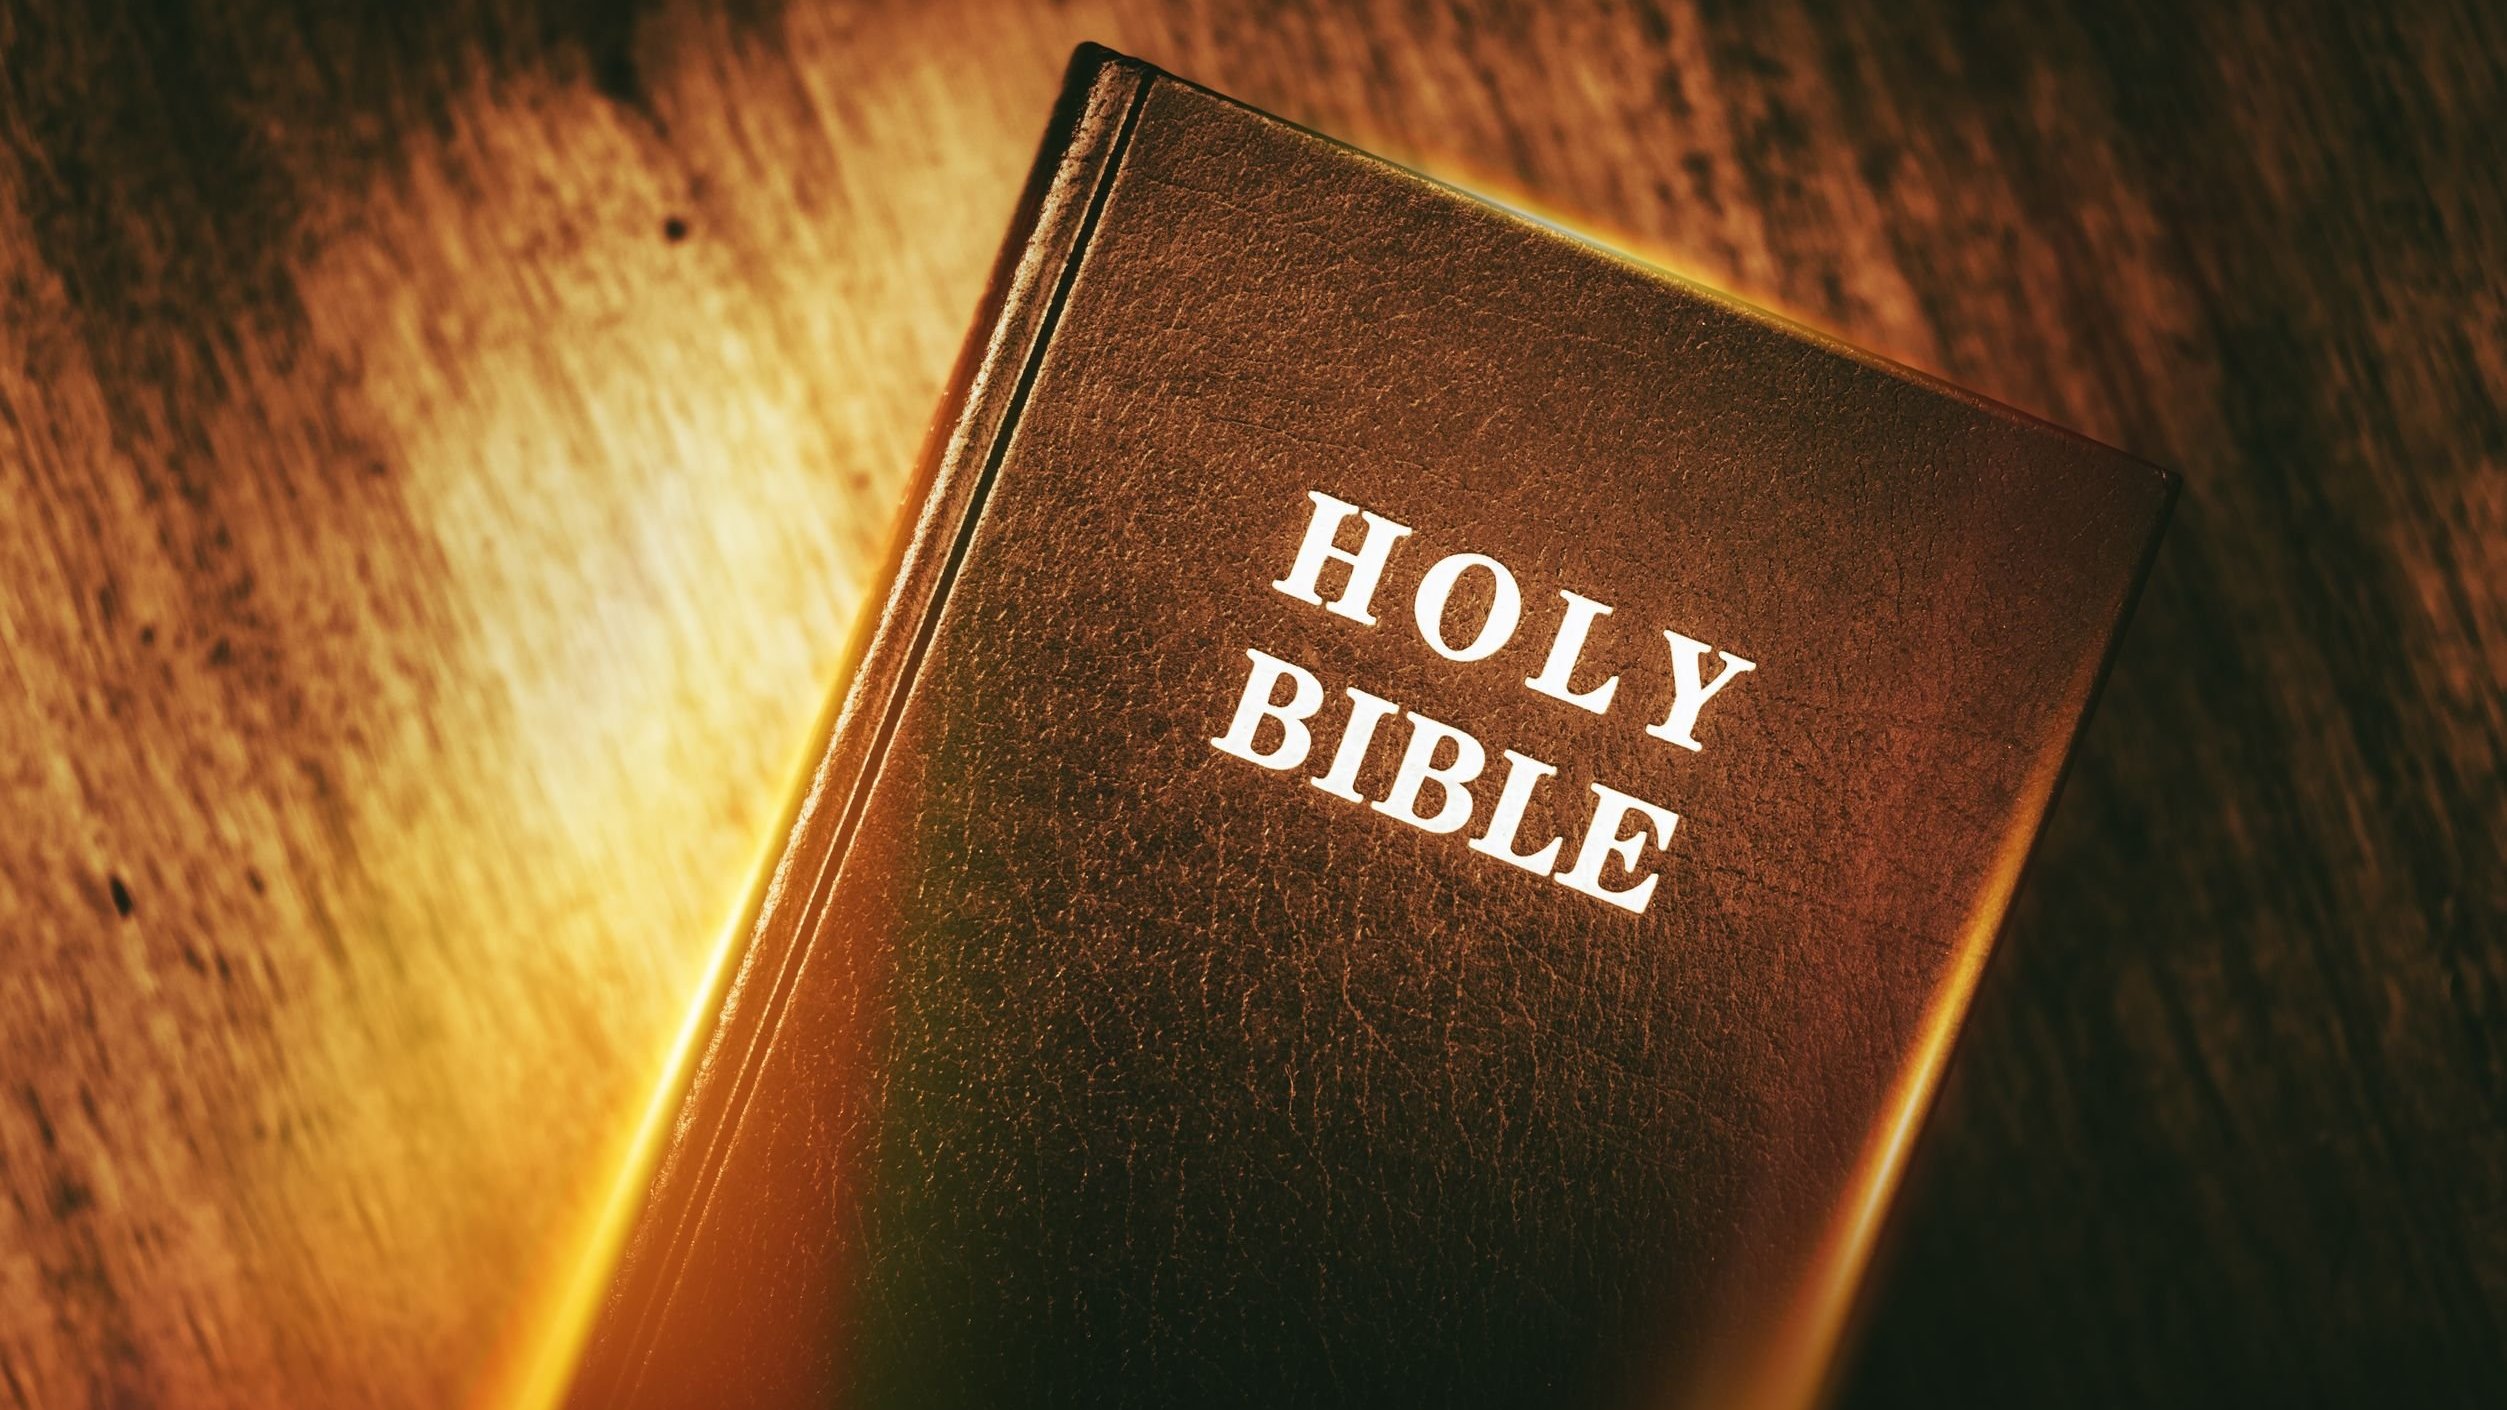 Bíblia sobre mesa de madeira